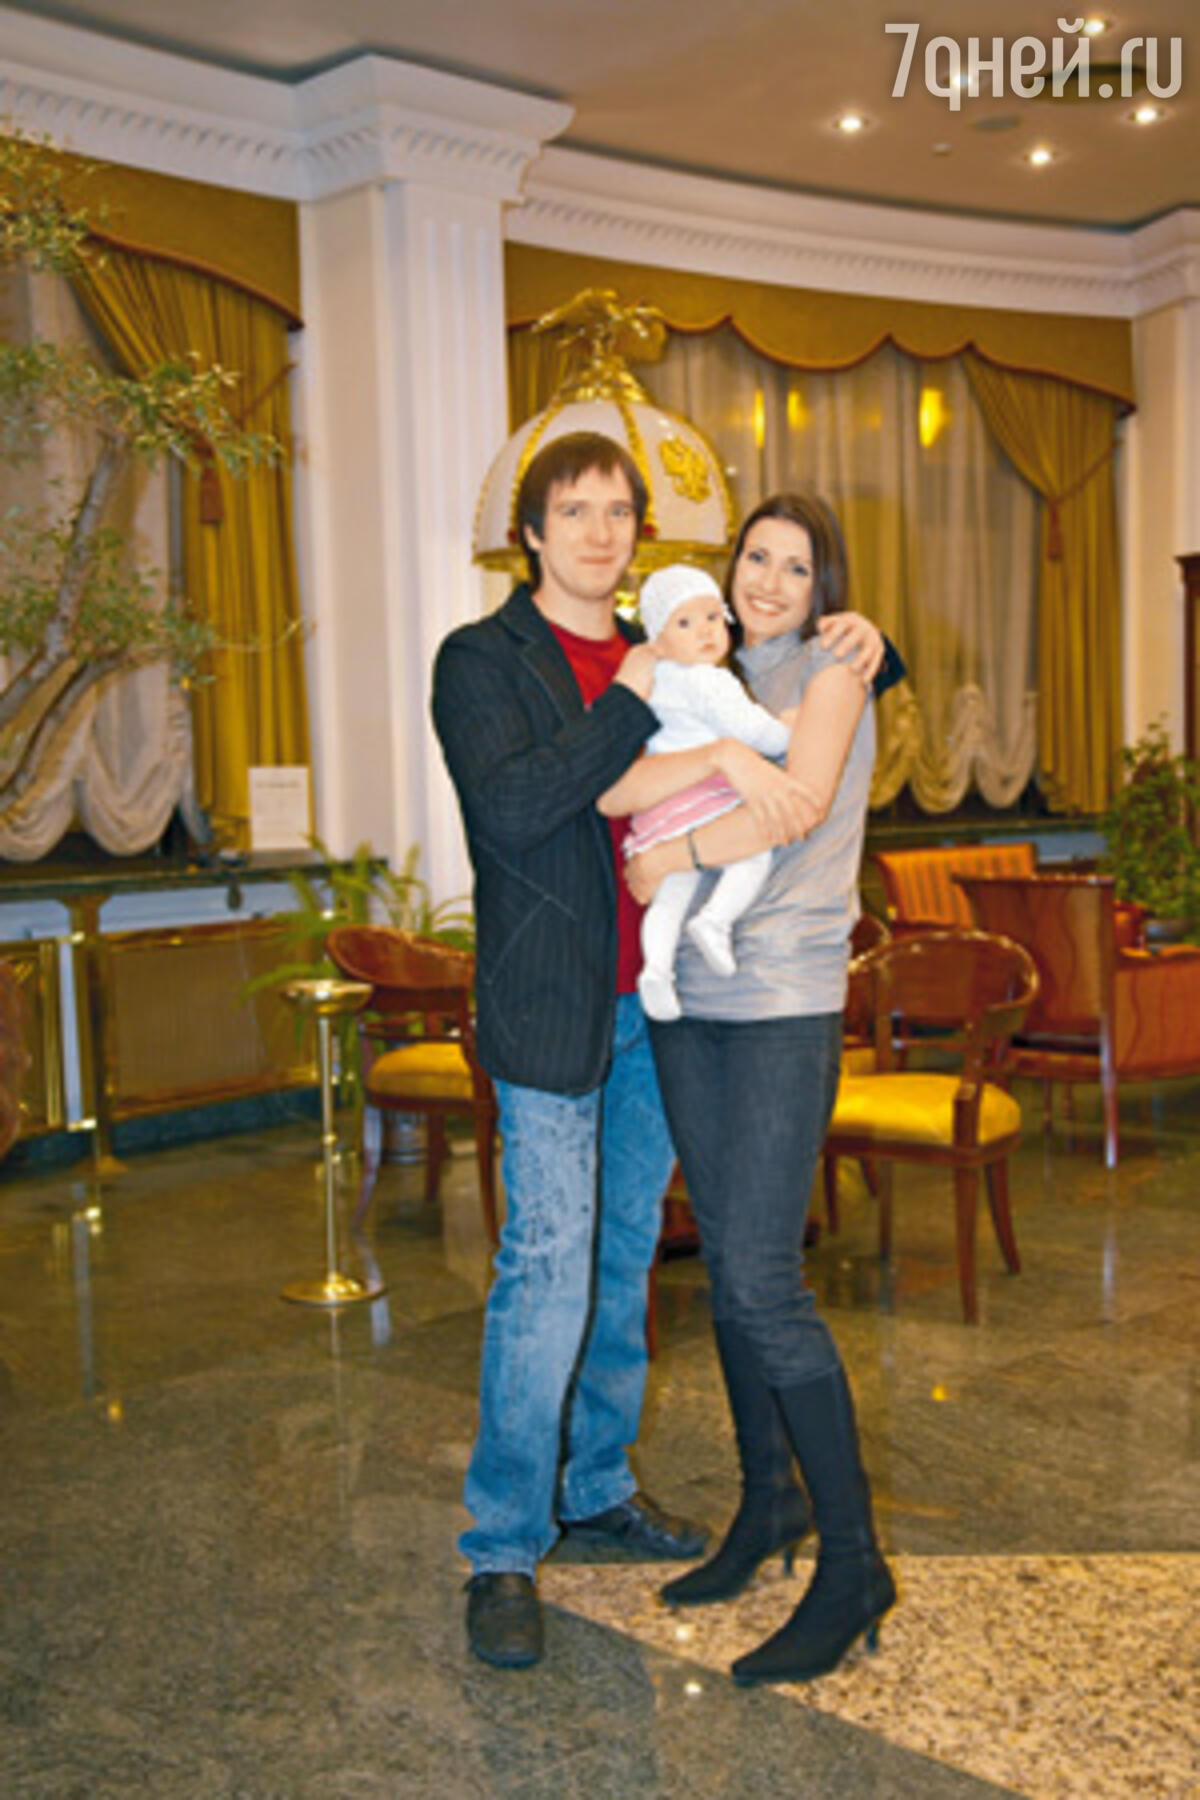 Петр Красилов с женой